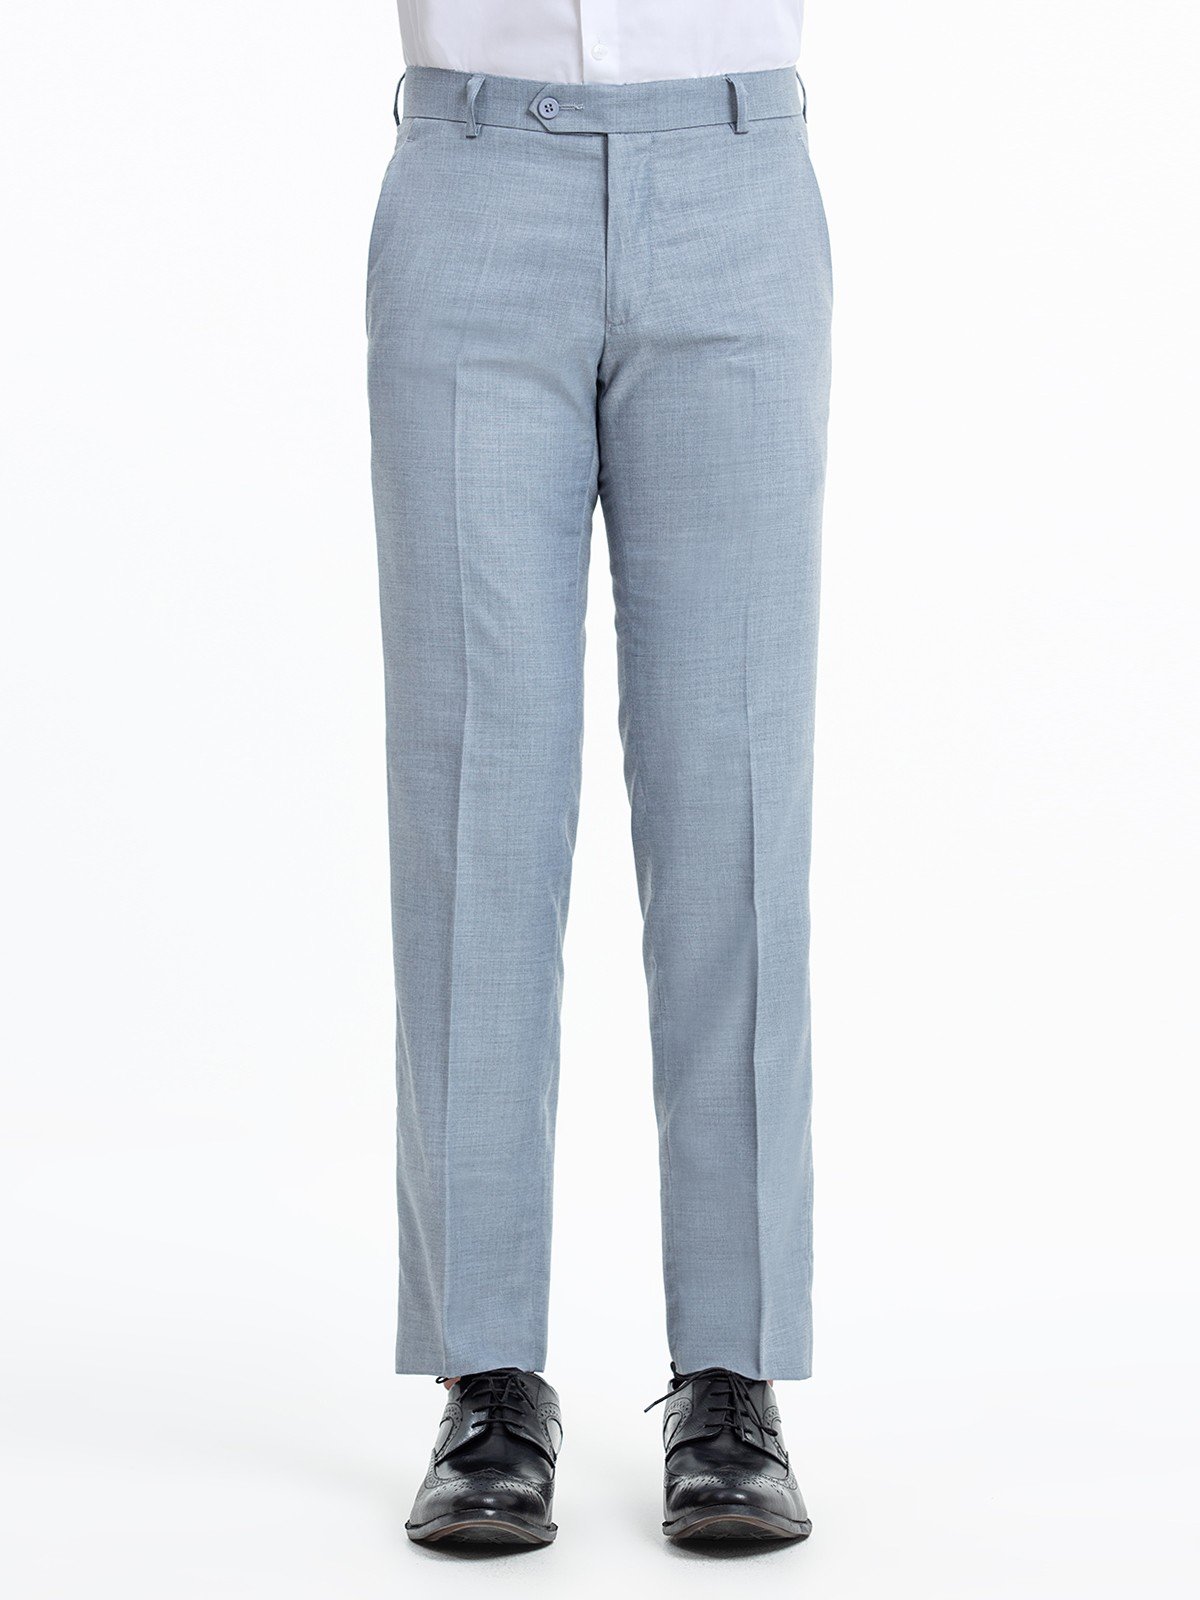 Men's Ash Grey Pant - EMBPF23-15249